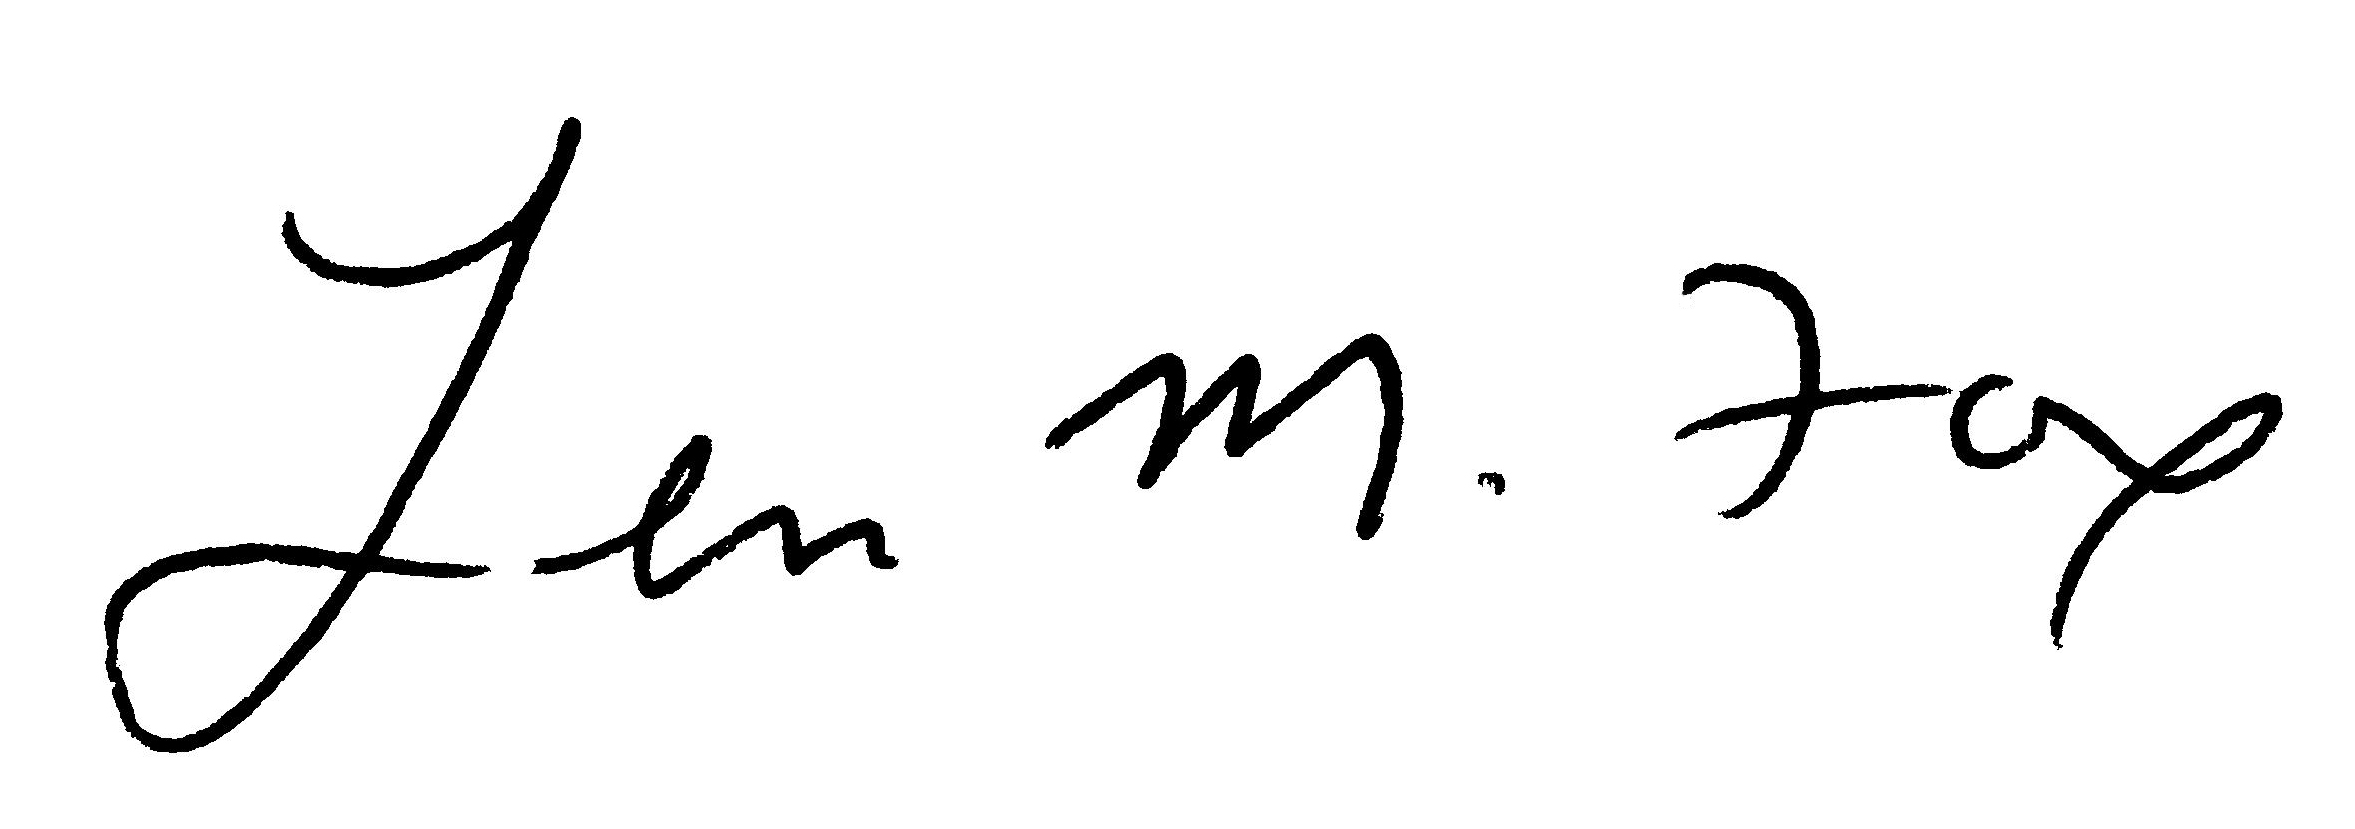 Len M Fox Signature.jpg